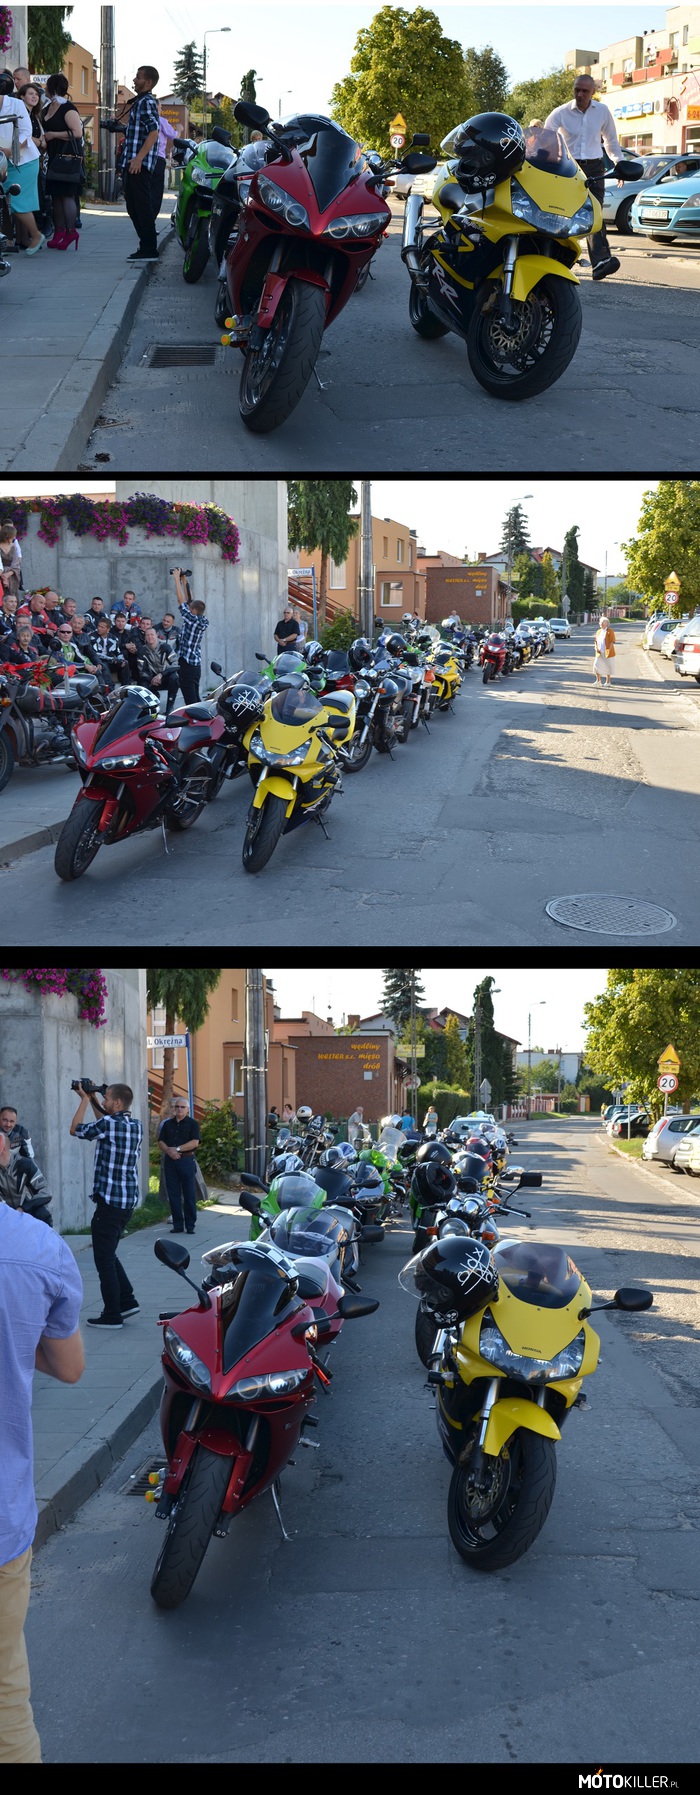 Motocyklowe zgrupowanie – więcej zdjęć tutaj: http://motokiller.pl/97975/Poszedlem-na-spacer-a-przed-kosciolem-napotkalem-to 